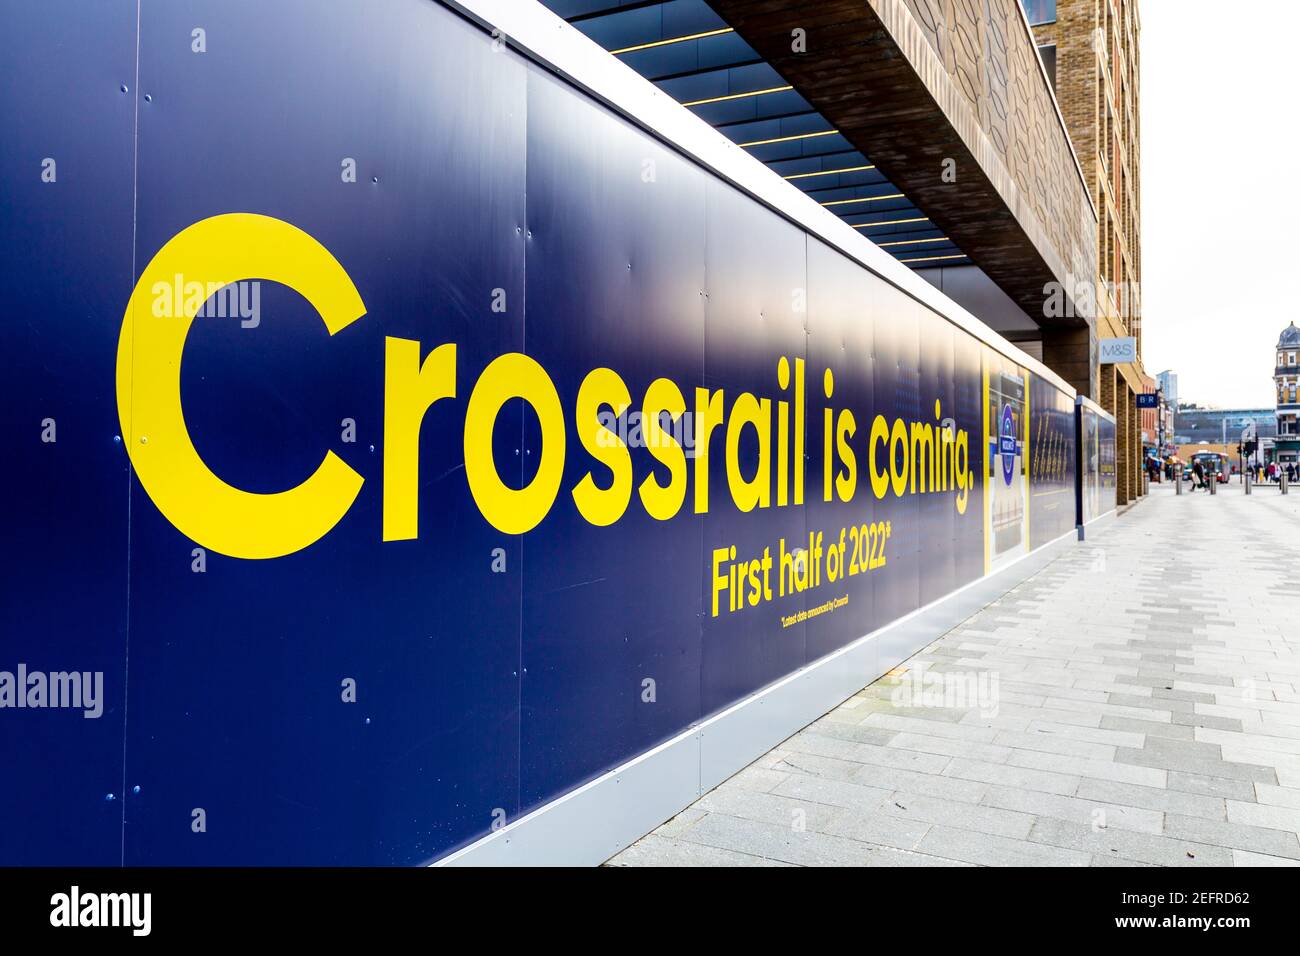 Crossrail è in arrivo, prima metà del 2022 segno all'entrata della nuova Elizabeth line, Woolwich, Londra, Regno Unito Foto Stock